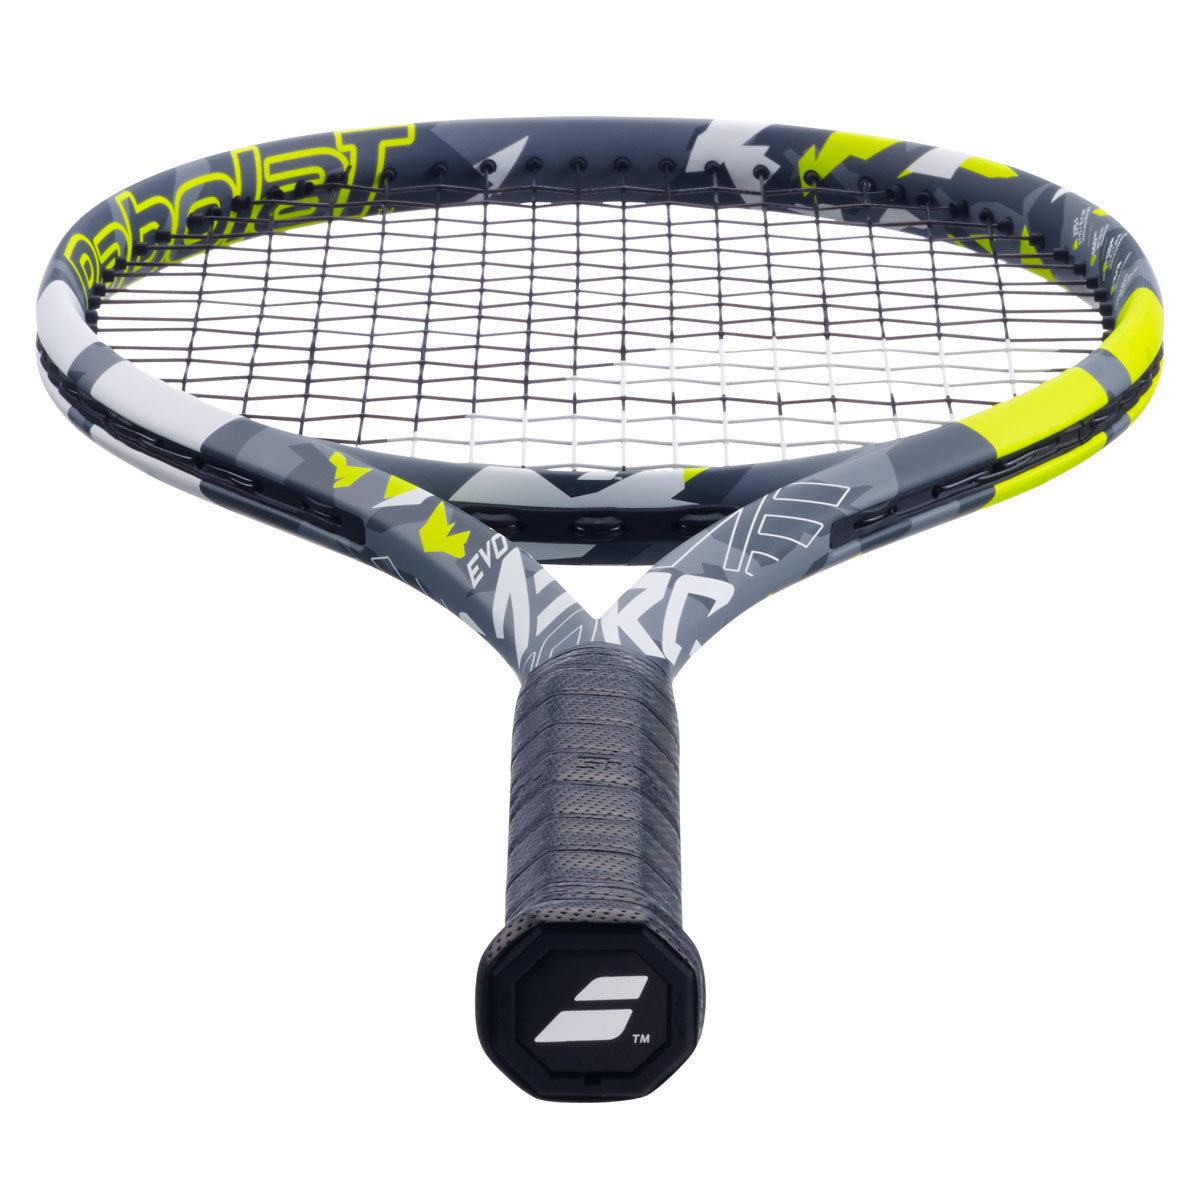 Babolat EVO Aero Tennis Racket [Strung]